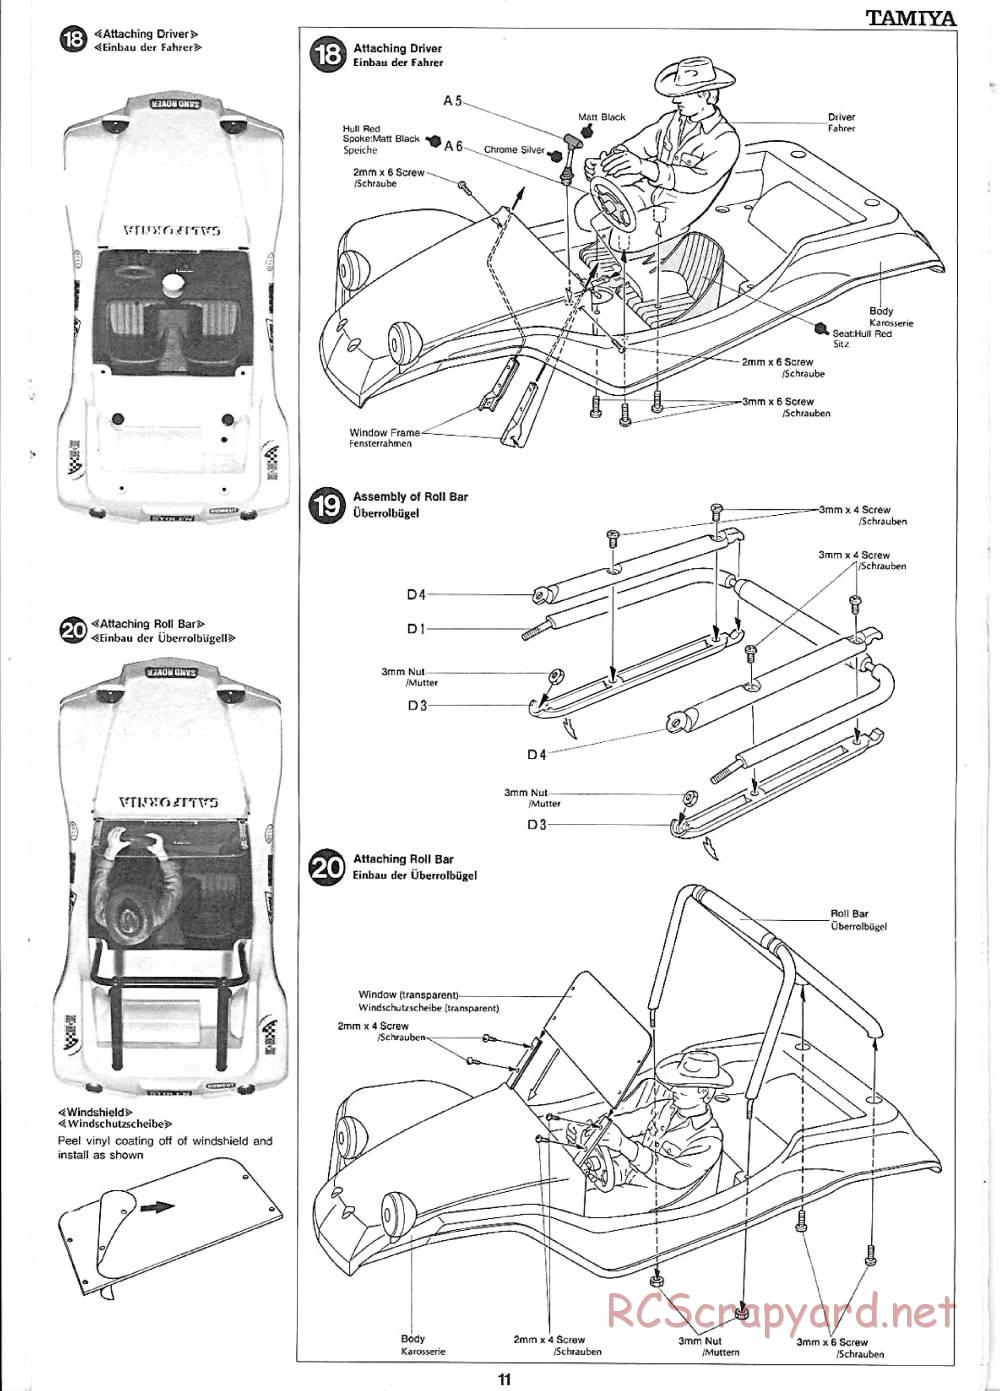 Tamiya - Sand Rover - 58024 - Manual - Page 11